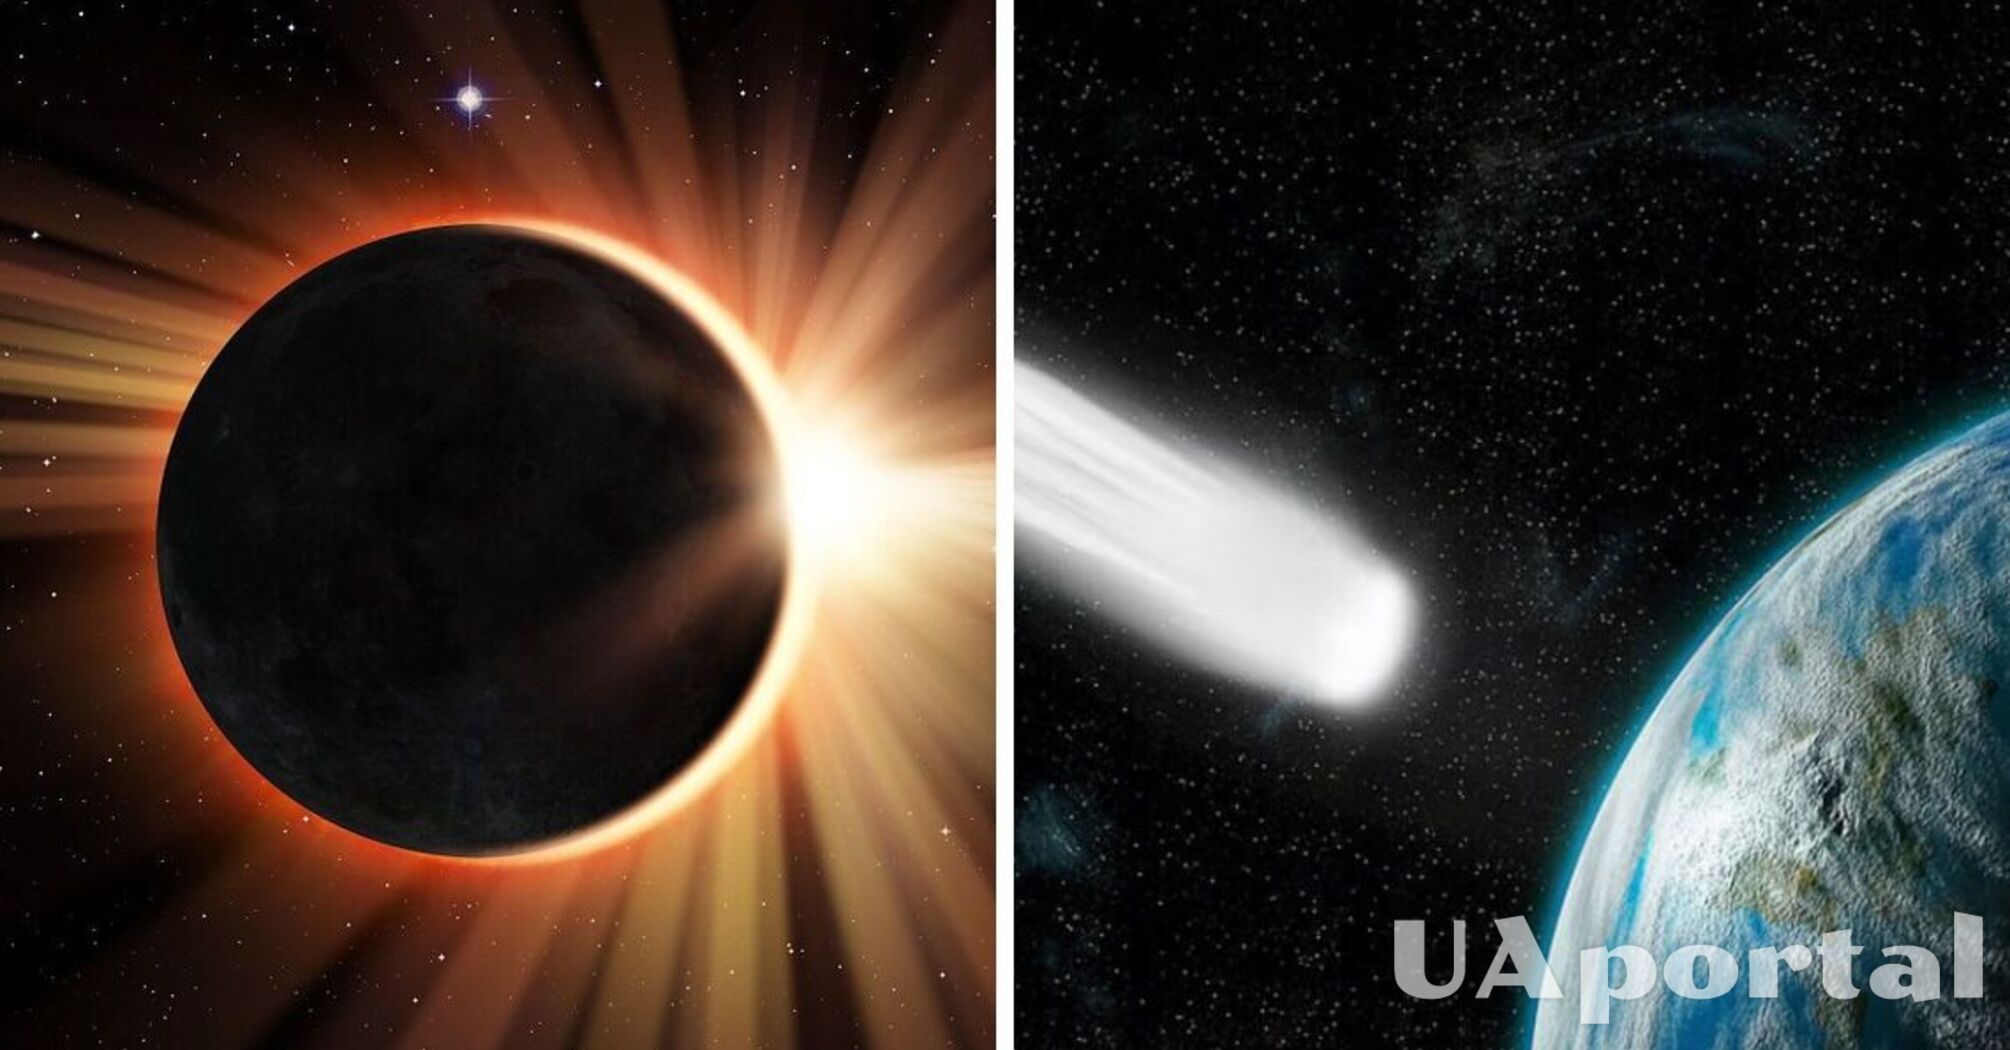 Diabelska kometa i zaćmienie Słońca w kwietniu 2024 r.